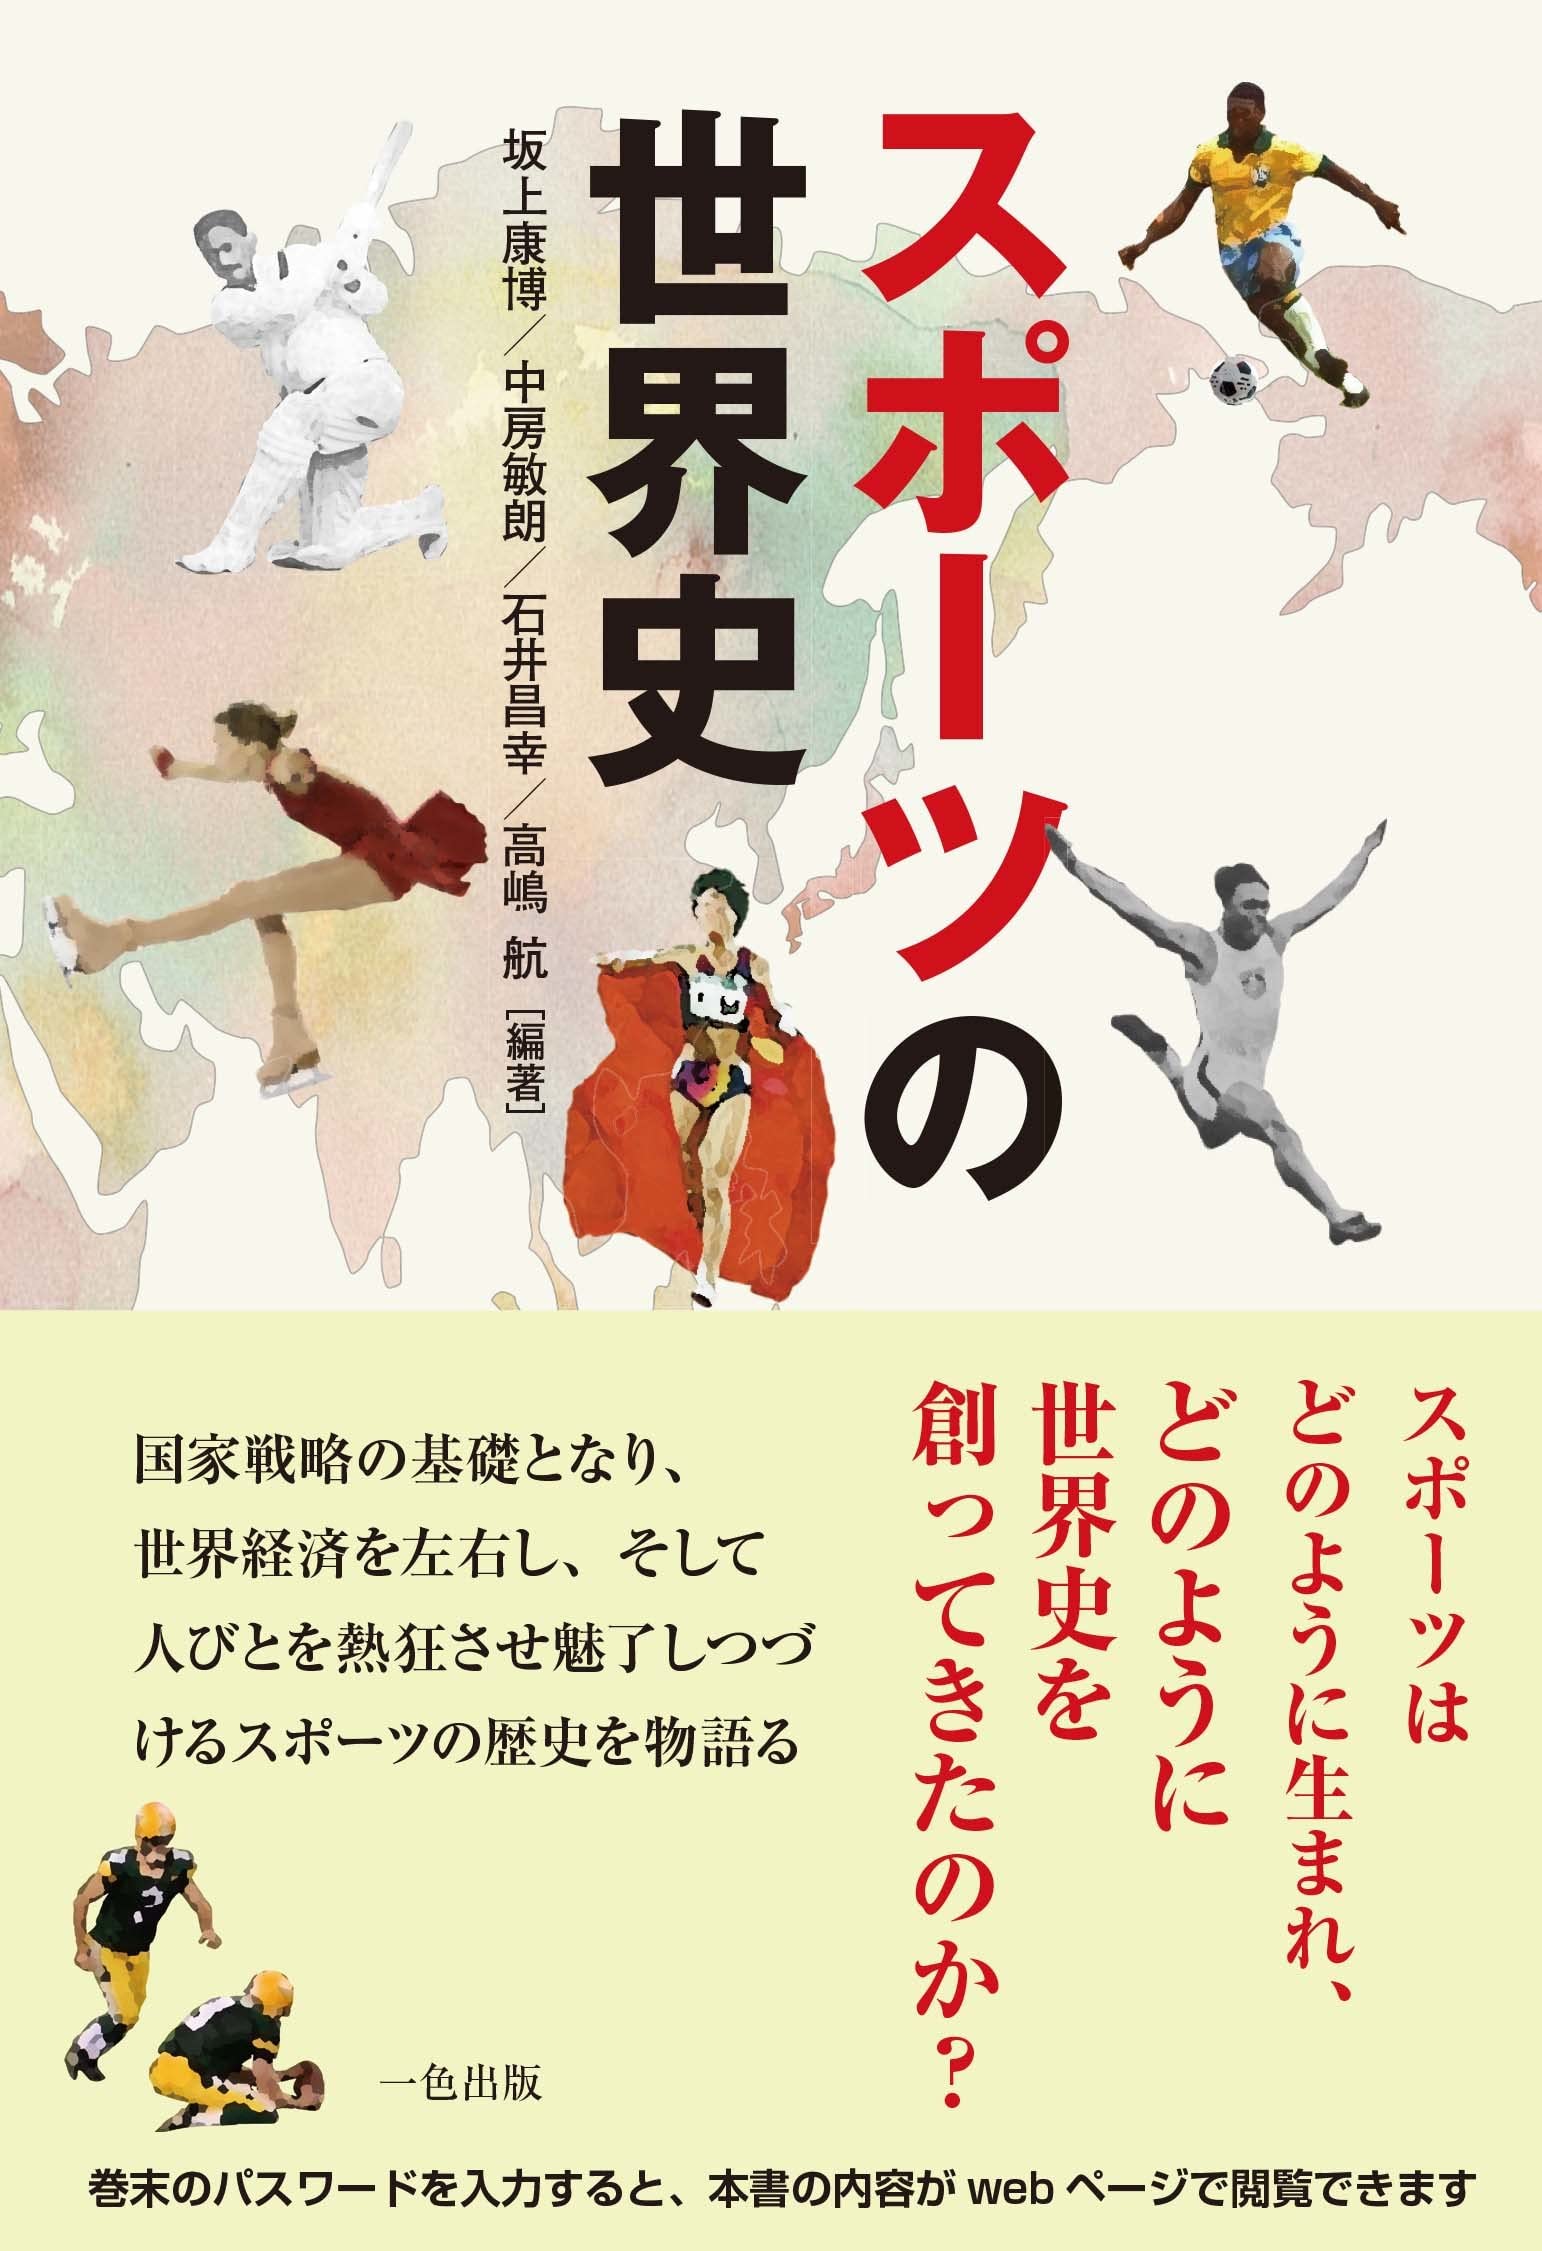 坂上康博/他･編著『スポーツの世界史』一色出版